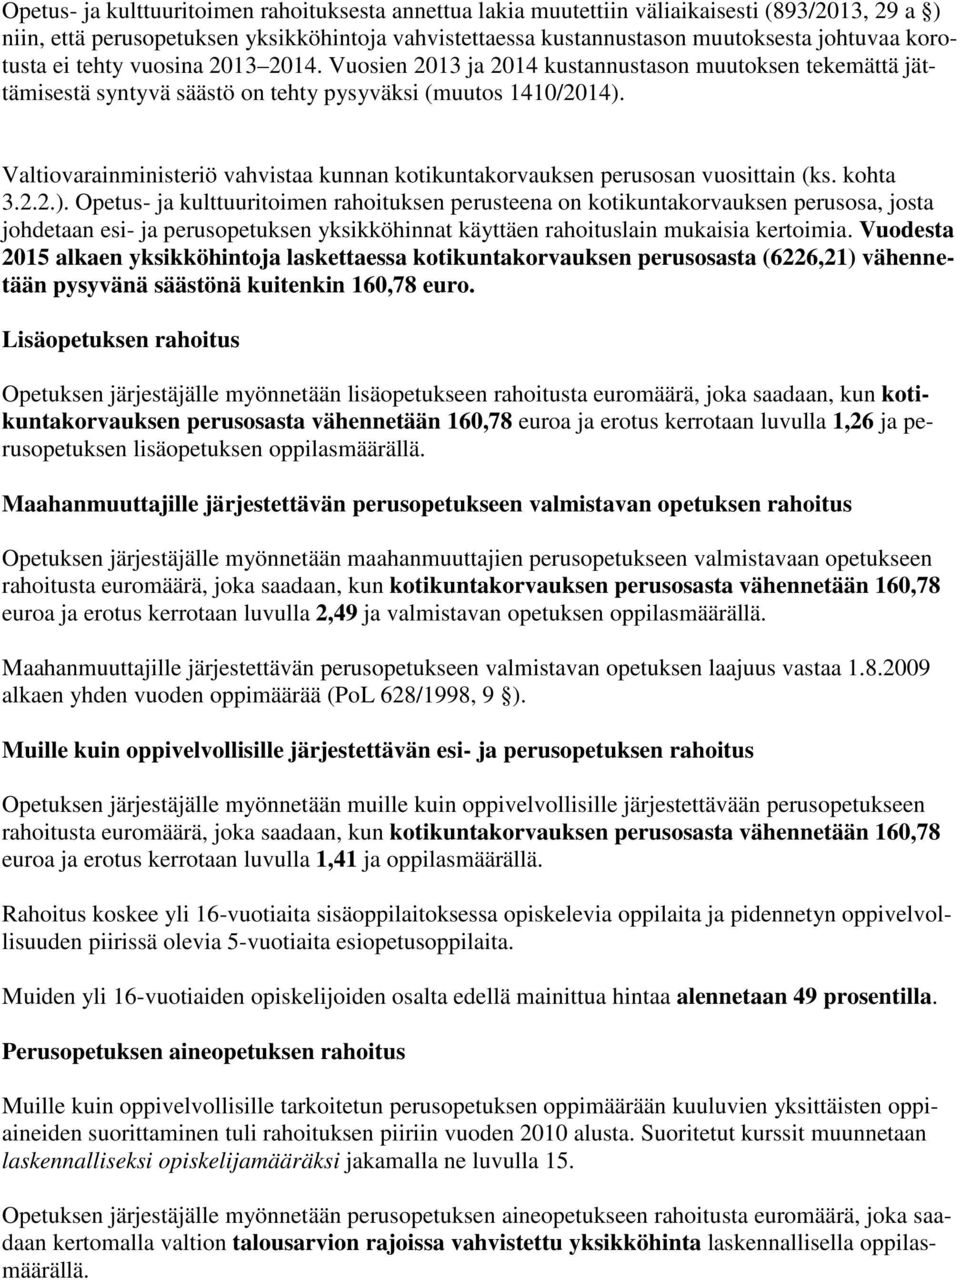 Valtiovarainministeriö vahvistaa kunnan kotikuntakorvauksen perusosan vuosittain (ks. kohta 3.2.2.).